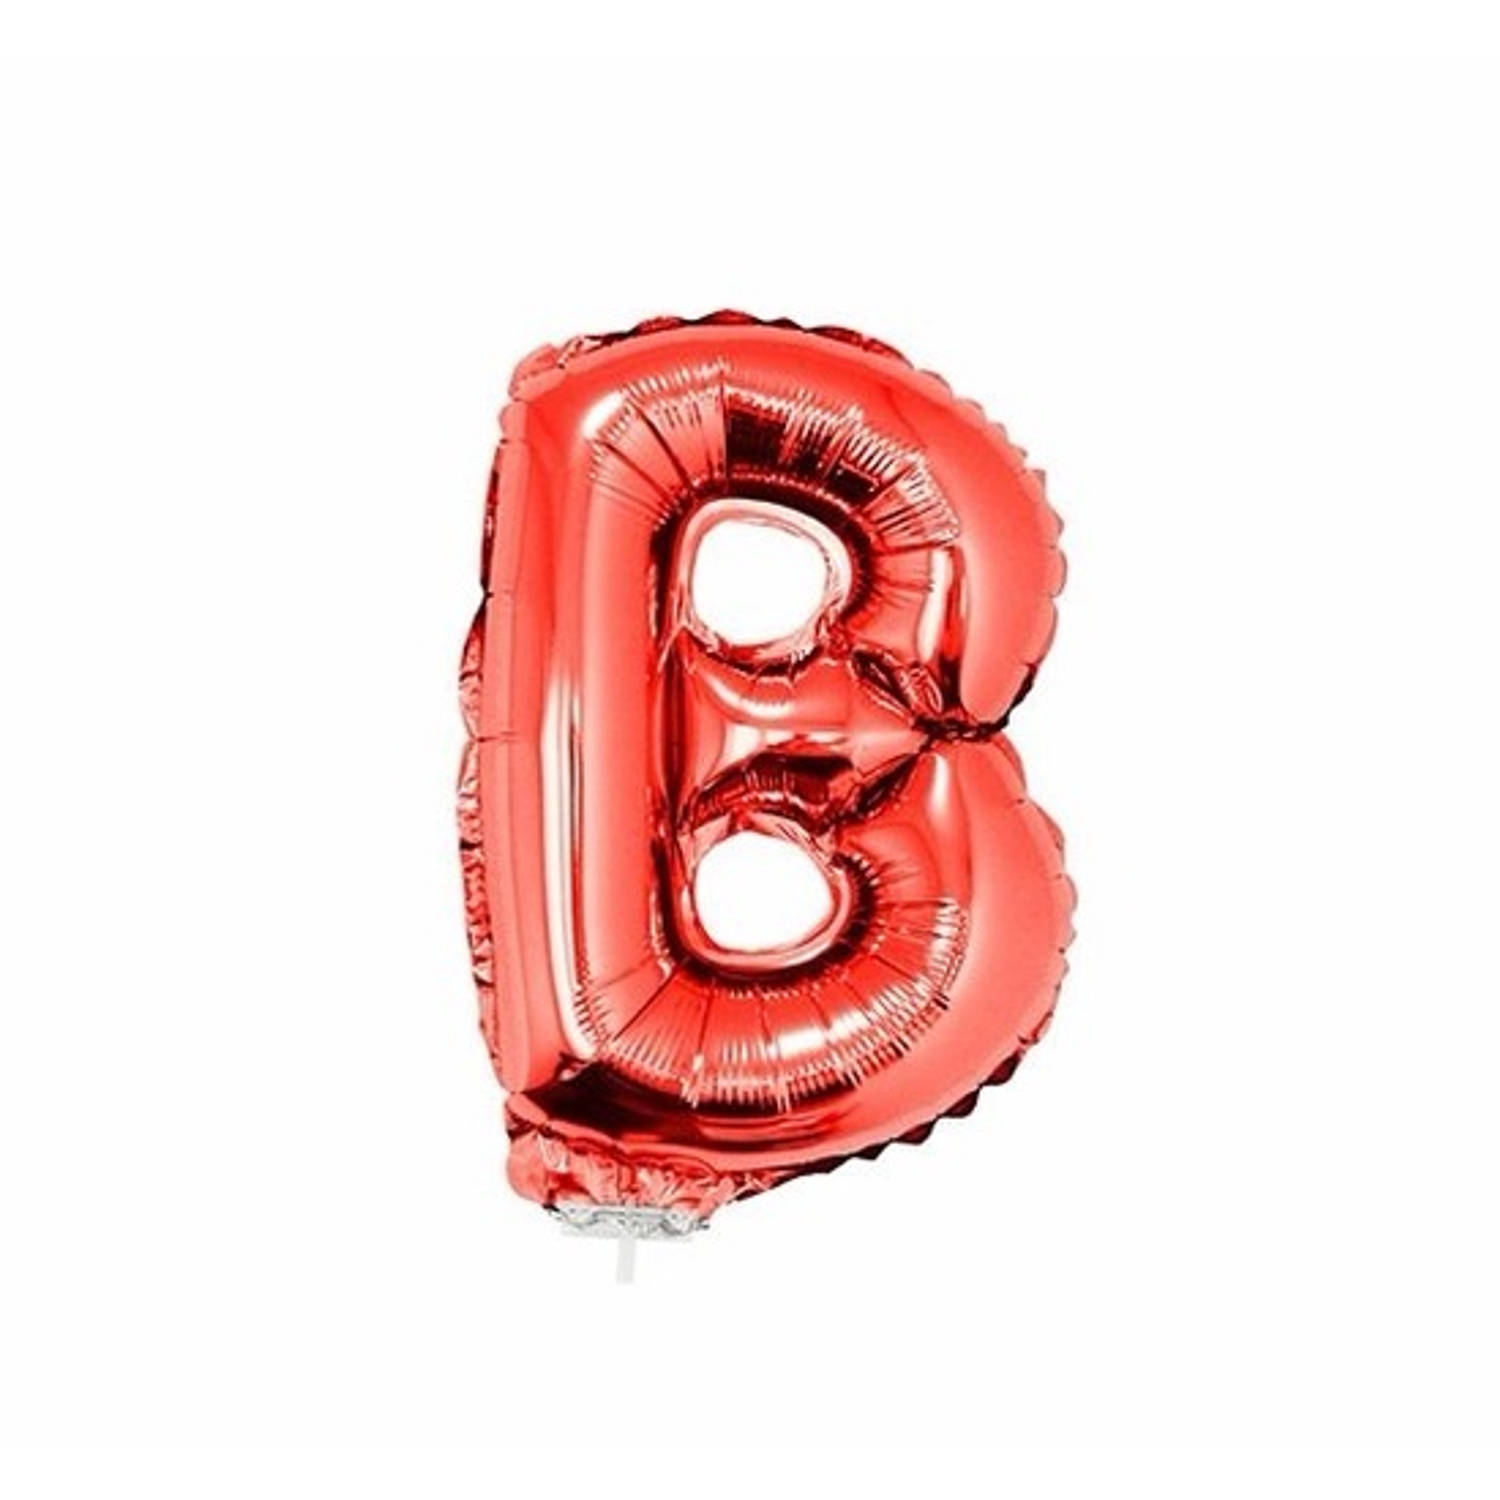 Rode opblaas letter b op stokje 41 cm